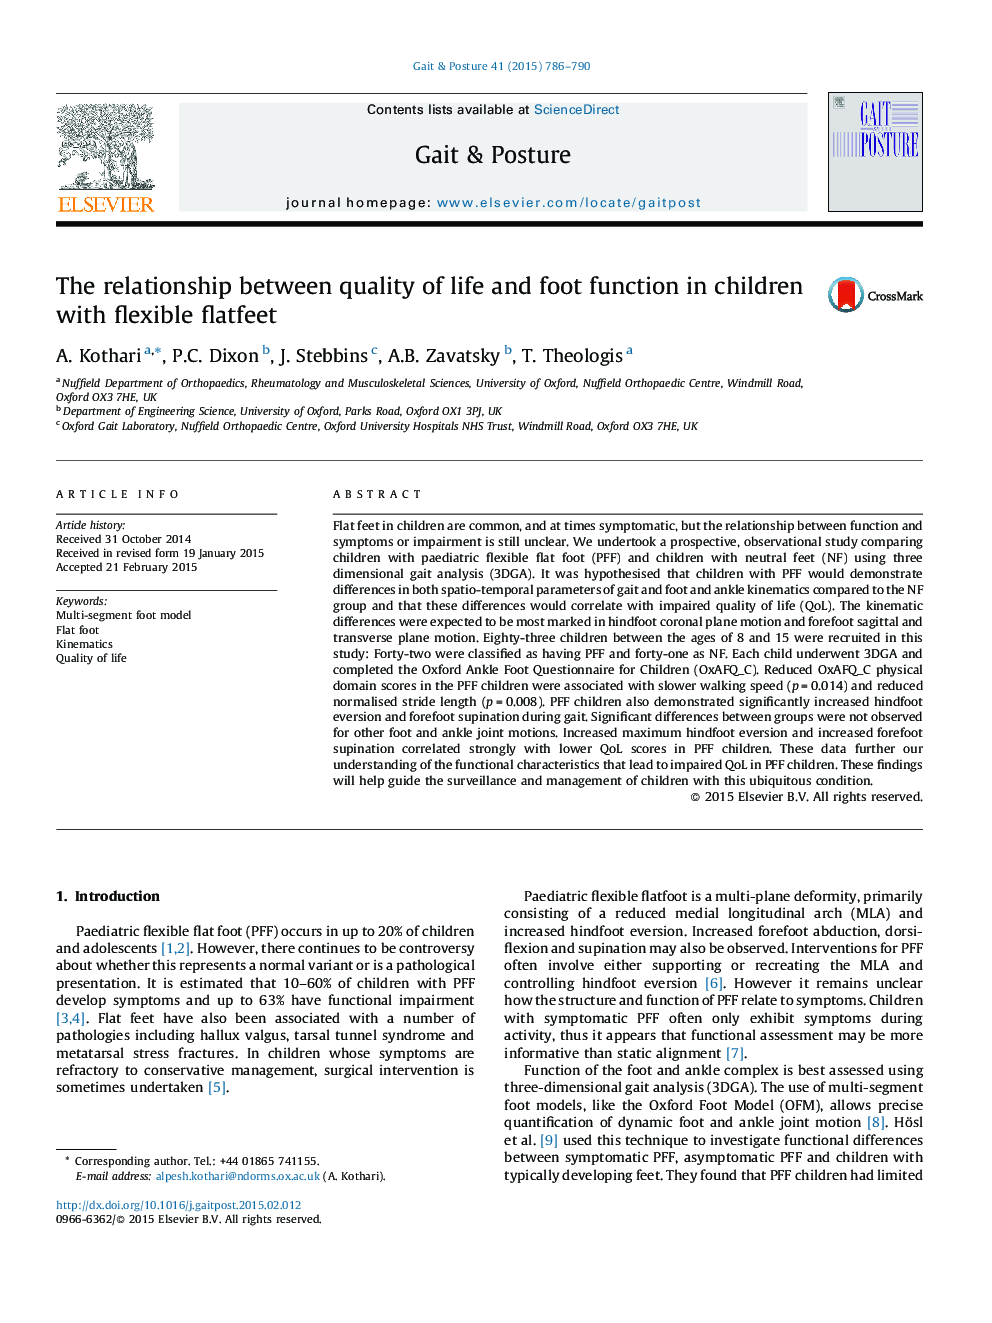 ارتباط کیفیت زندگی و عملکرد پا در کودکان مبتلا به پوسیدگی انعطاف پذیر 